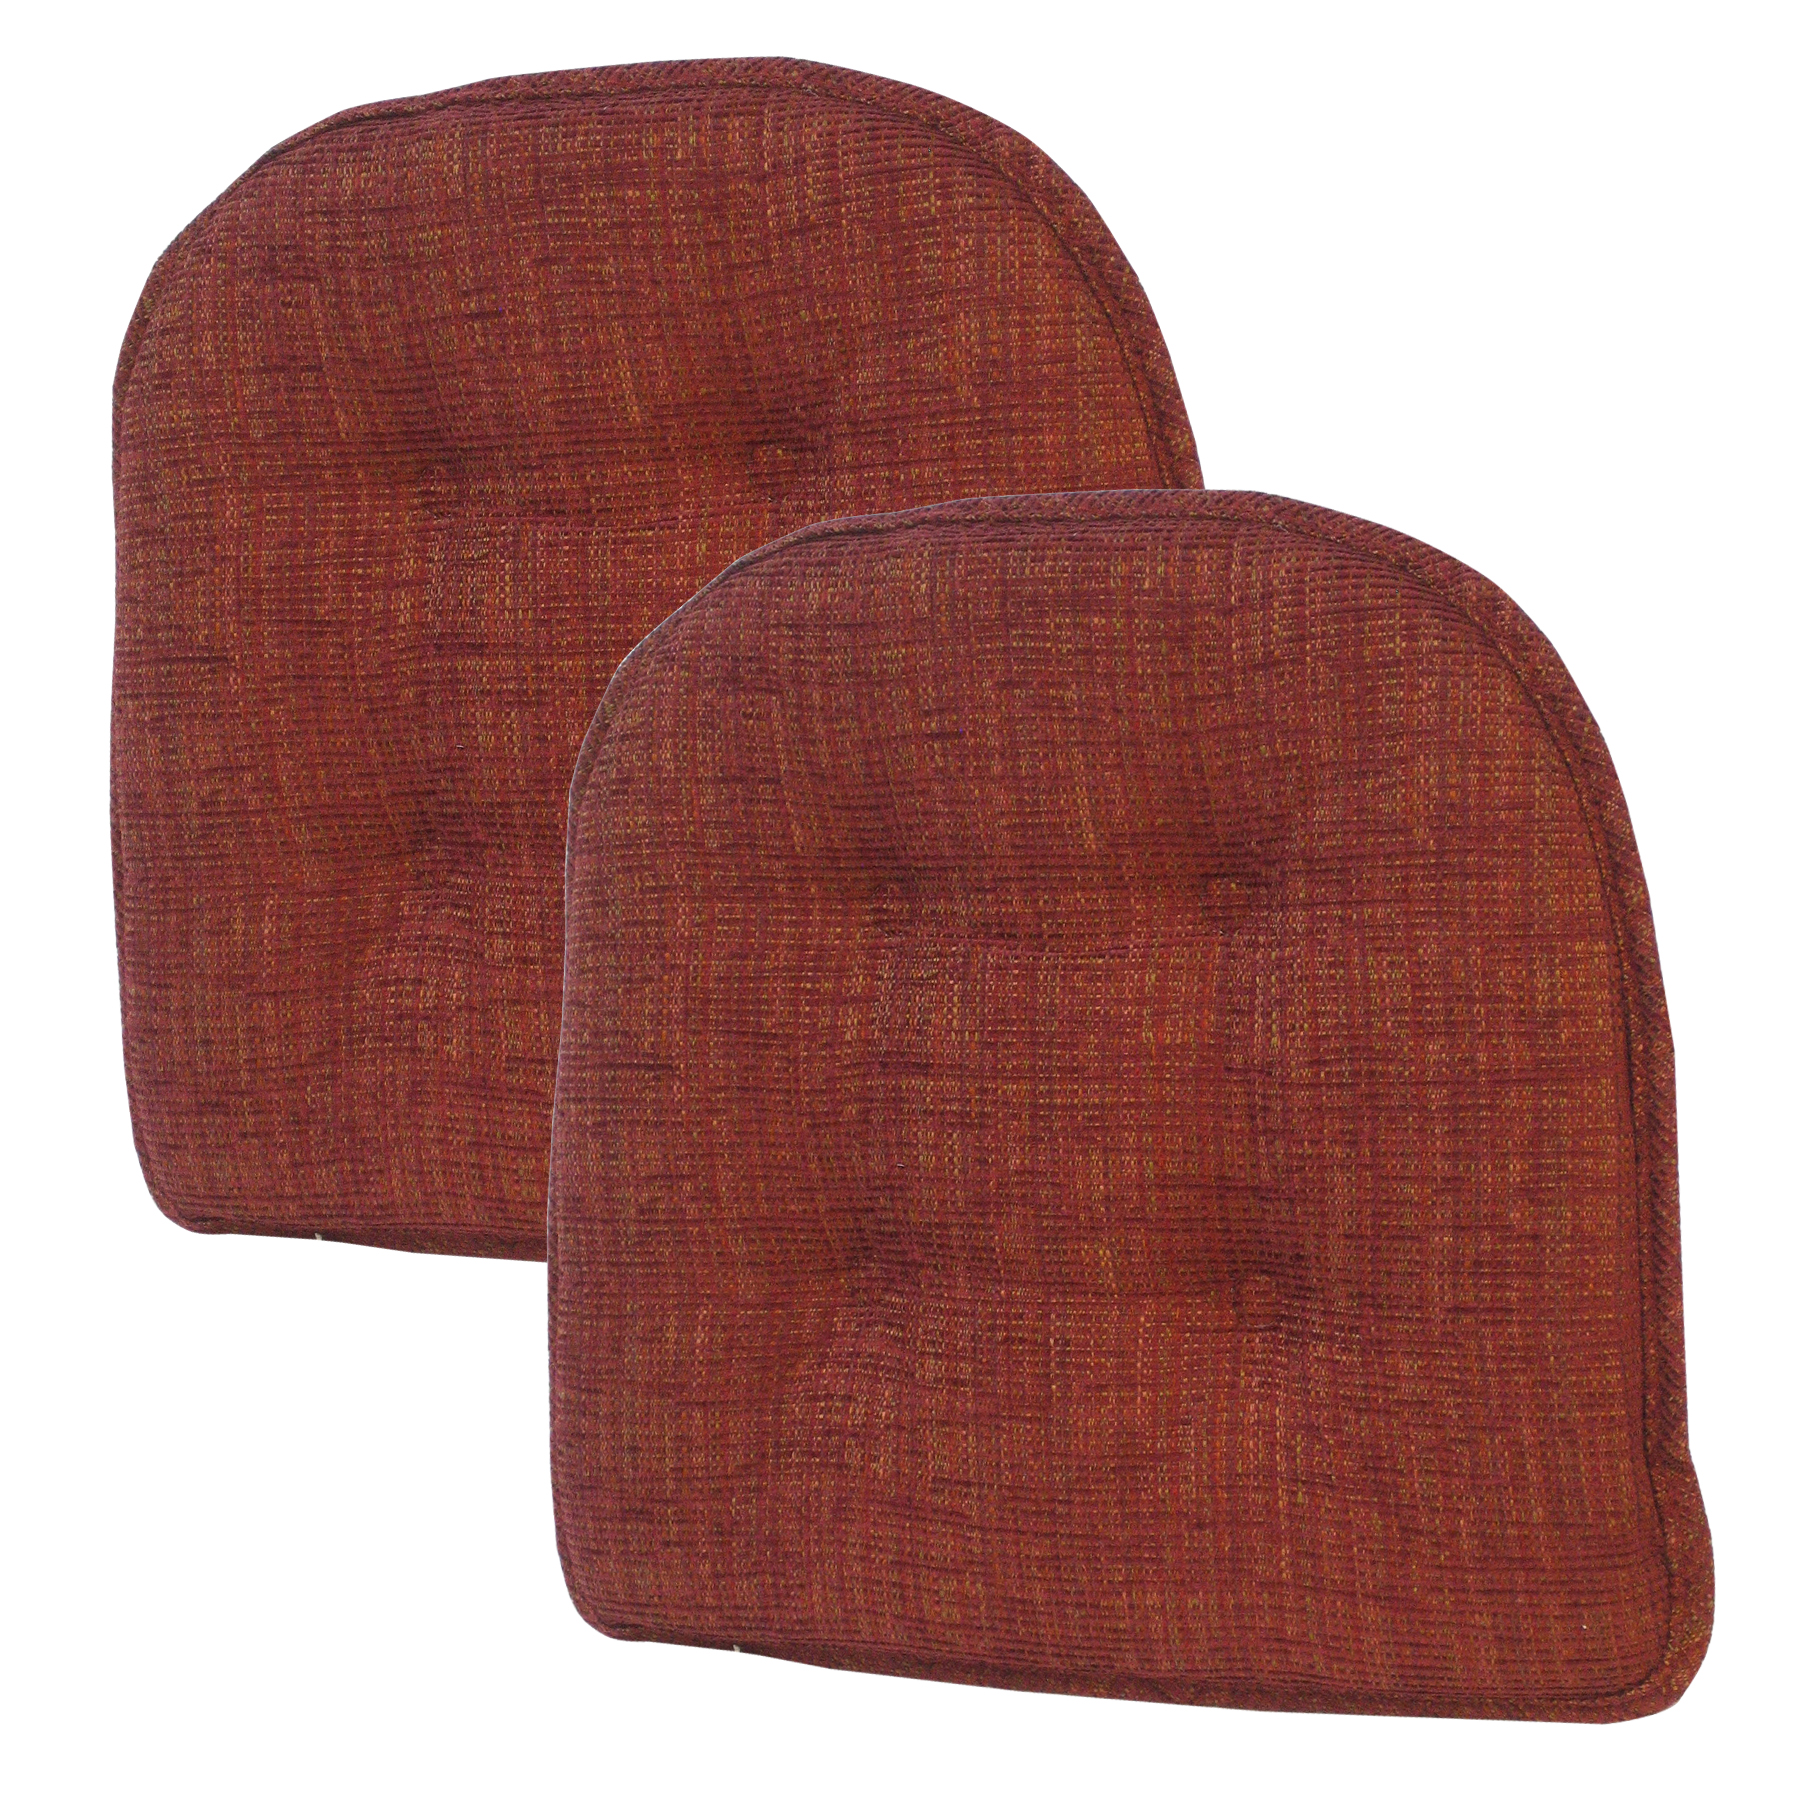 The Gripper Non Slip Chair Pad Accord  2-Pk